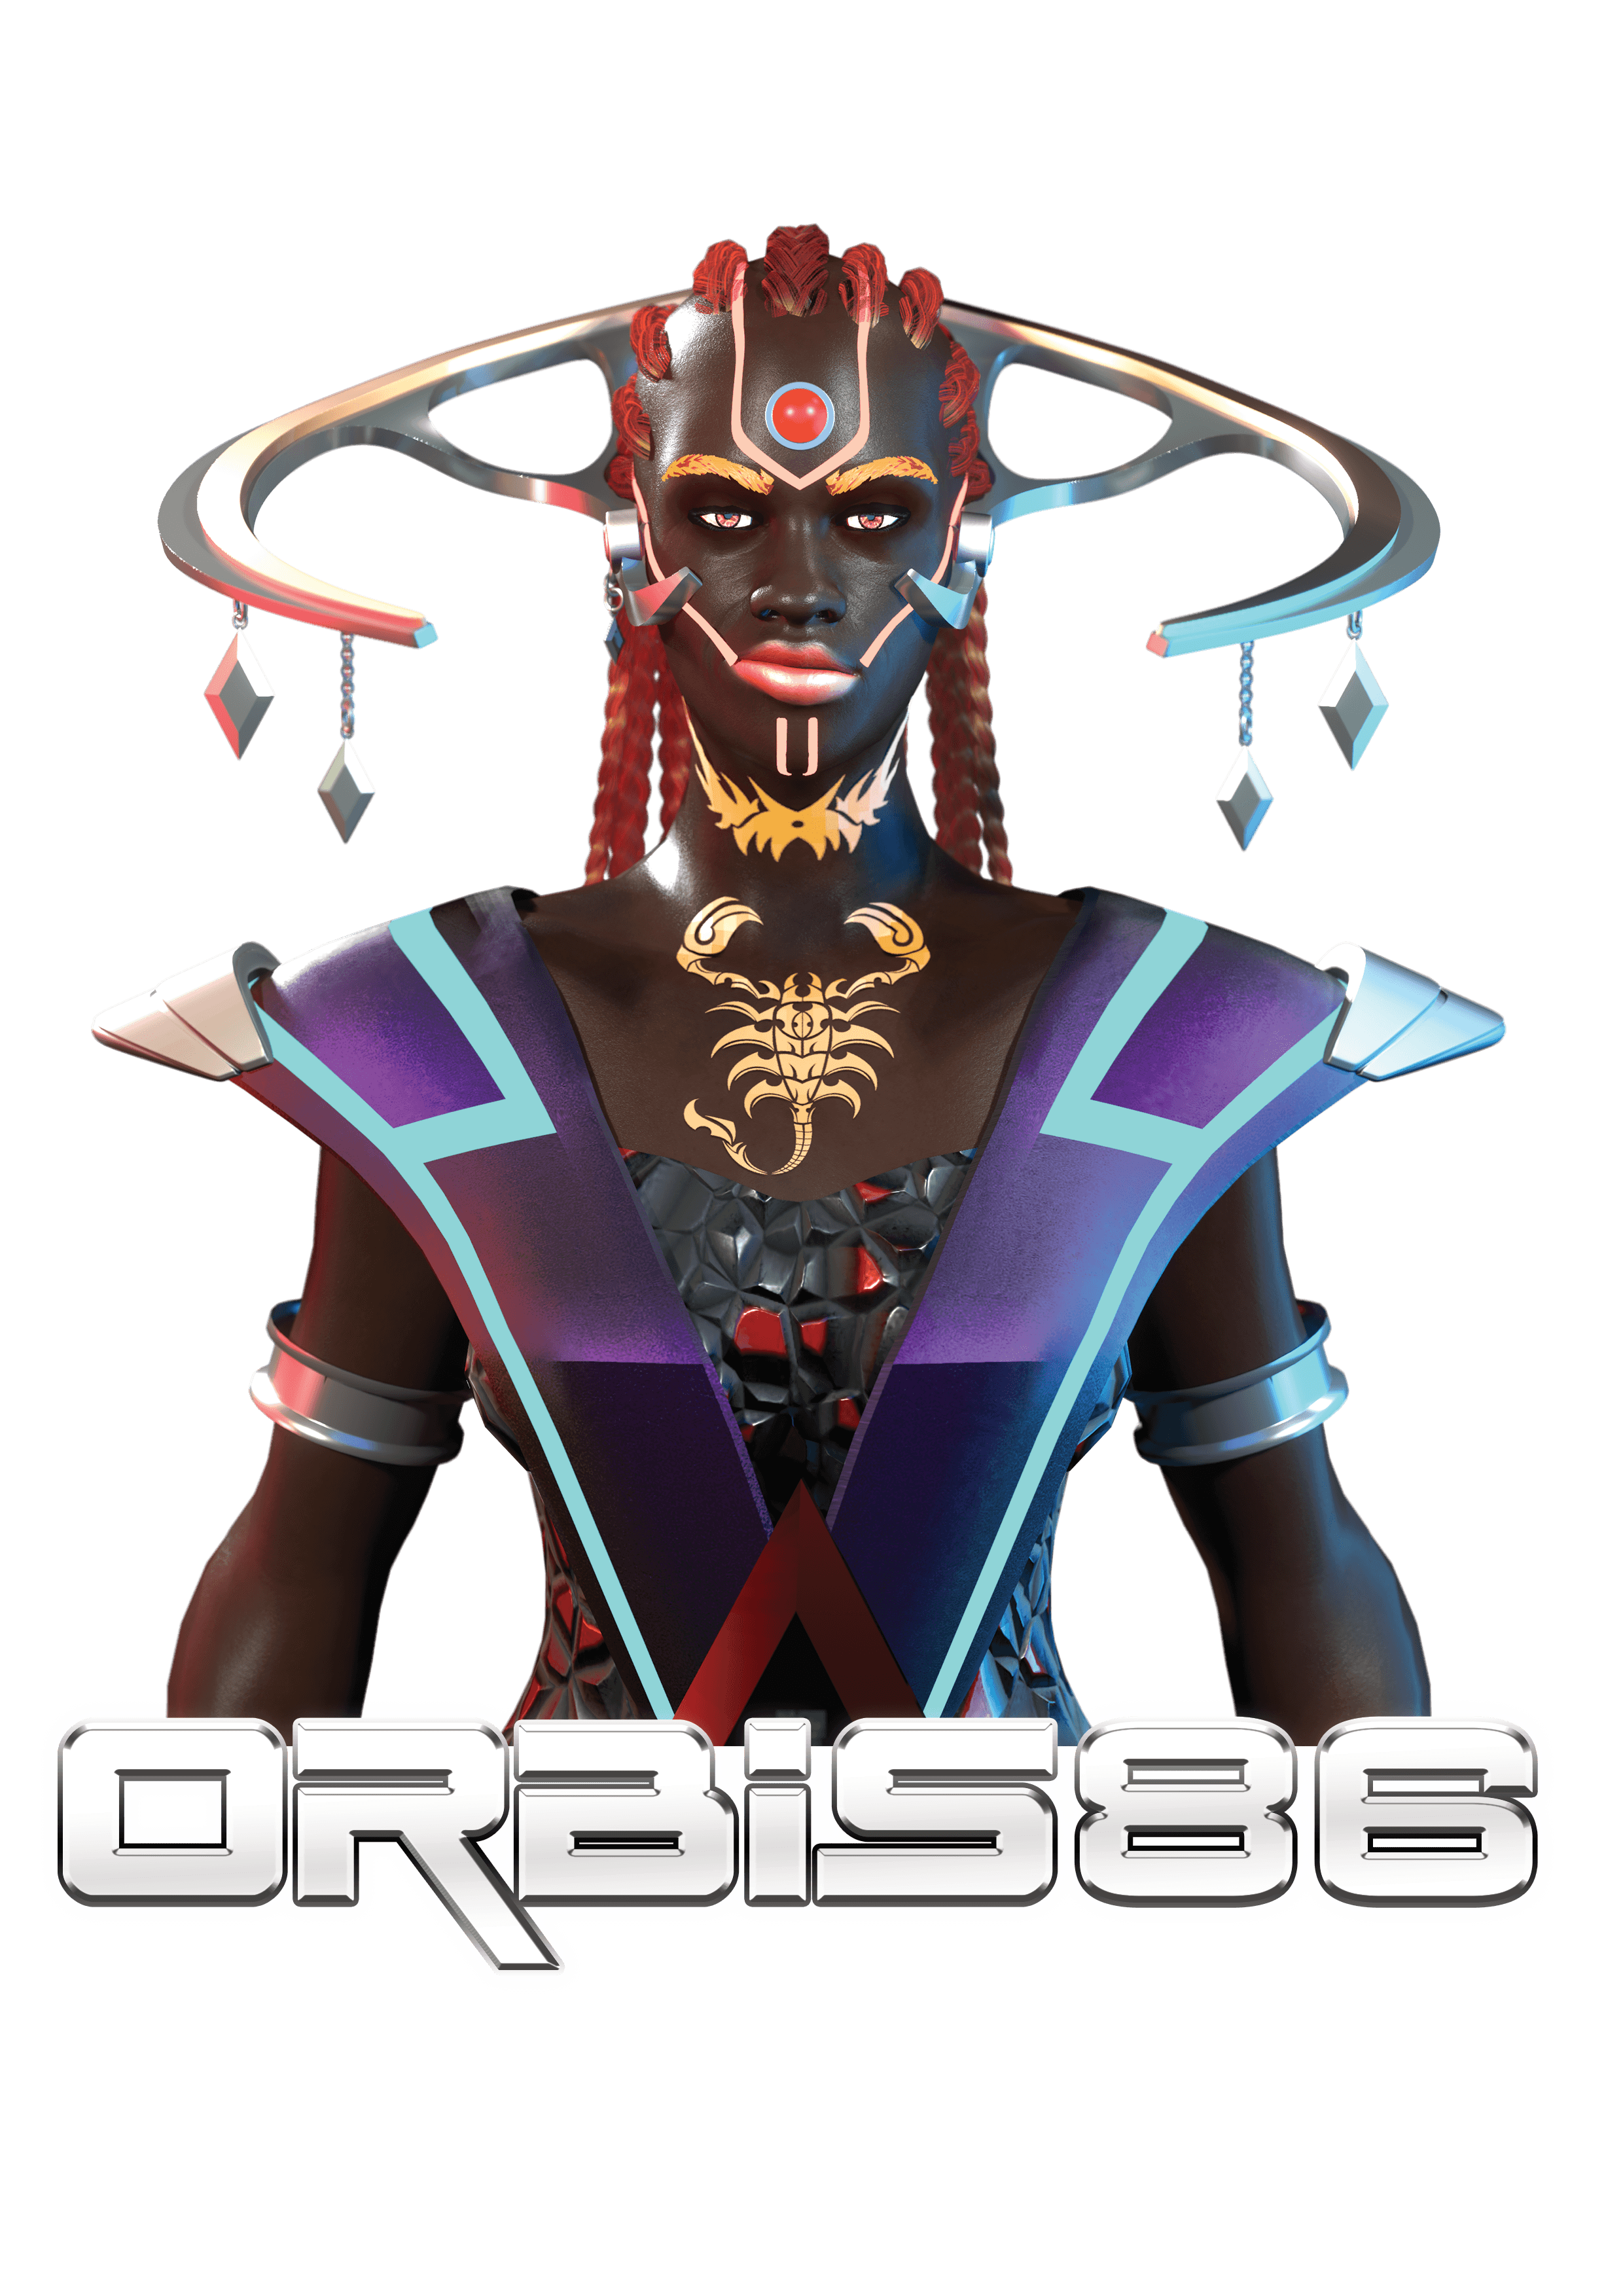 orbis86